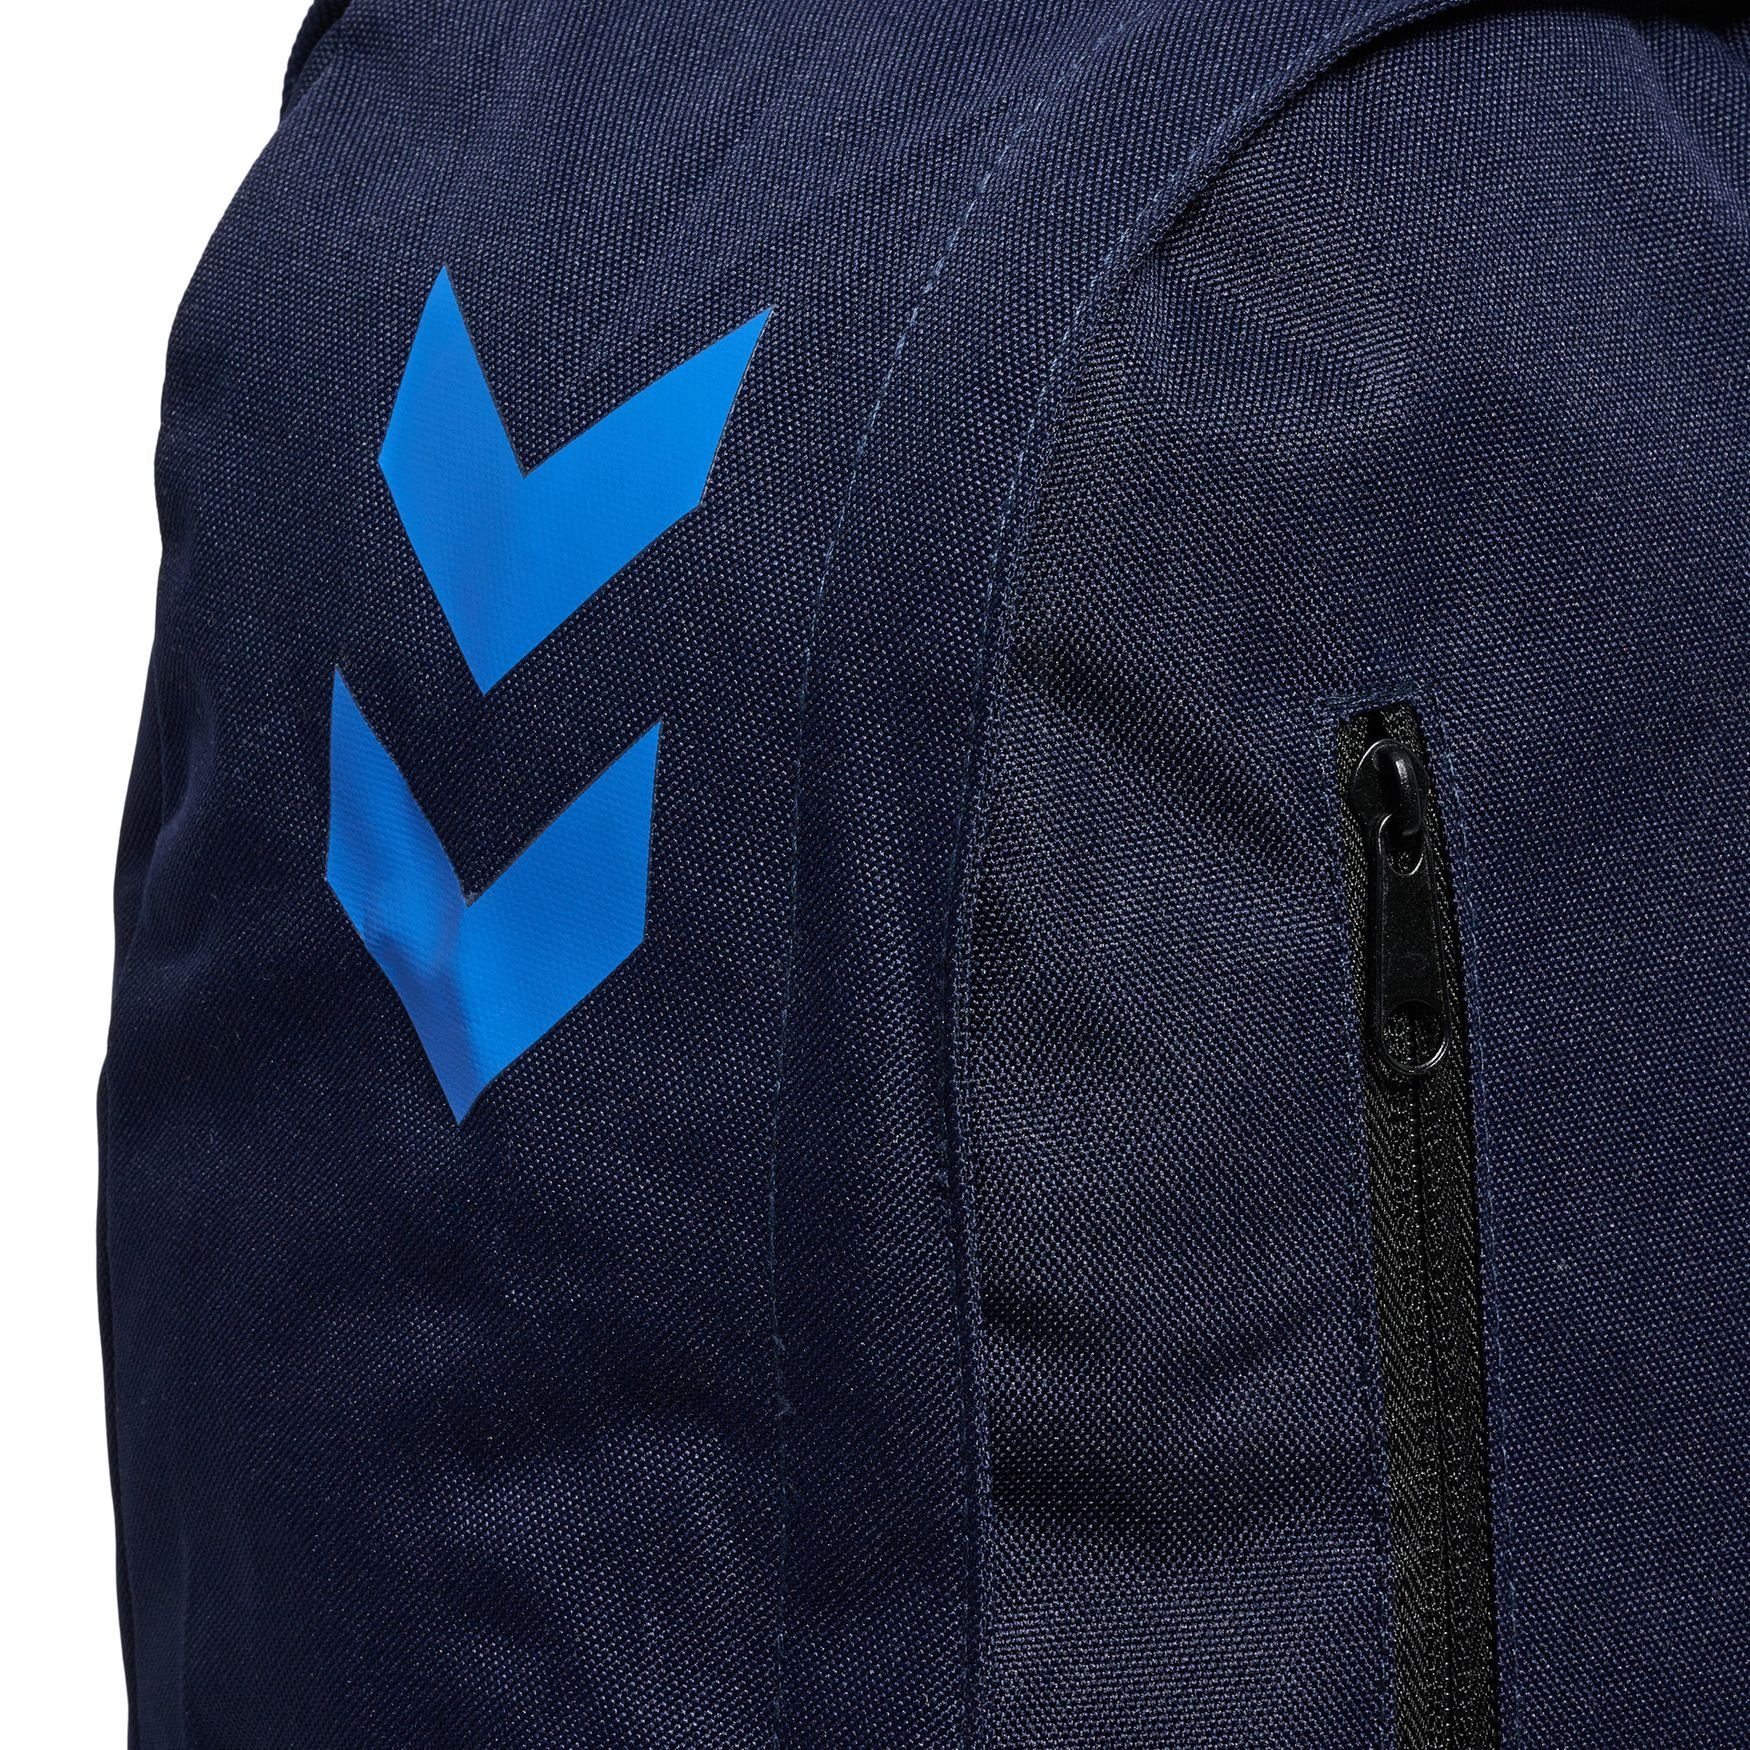 5146 BACK Blau Tasche mit Laptop CORE Fach in Rucksack Basic Rucksack PACK, hummel Ranzen